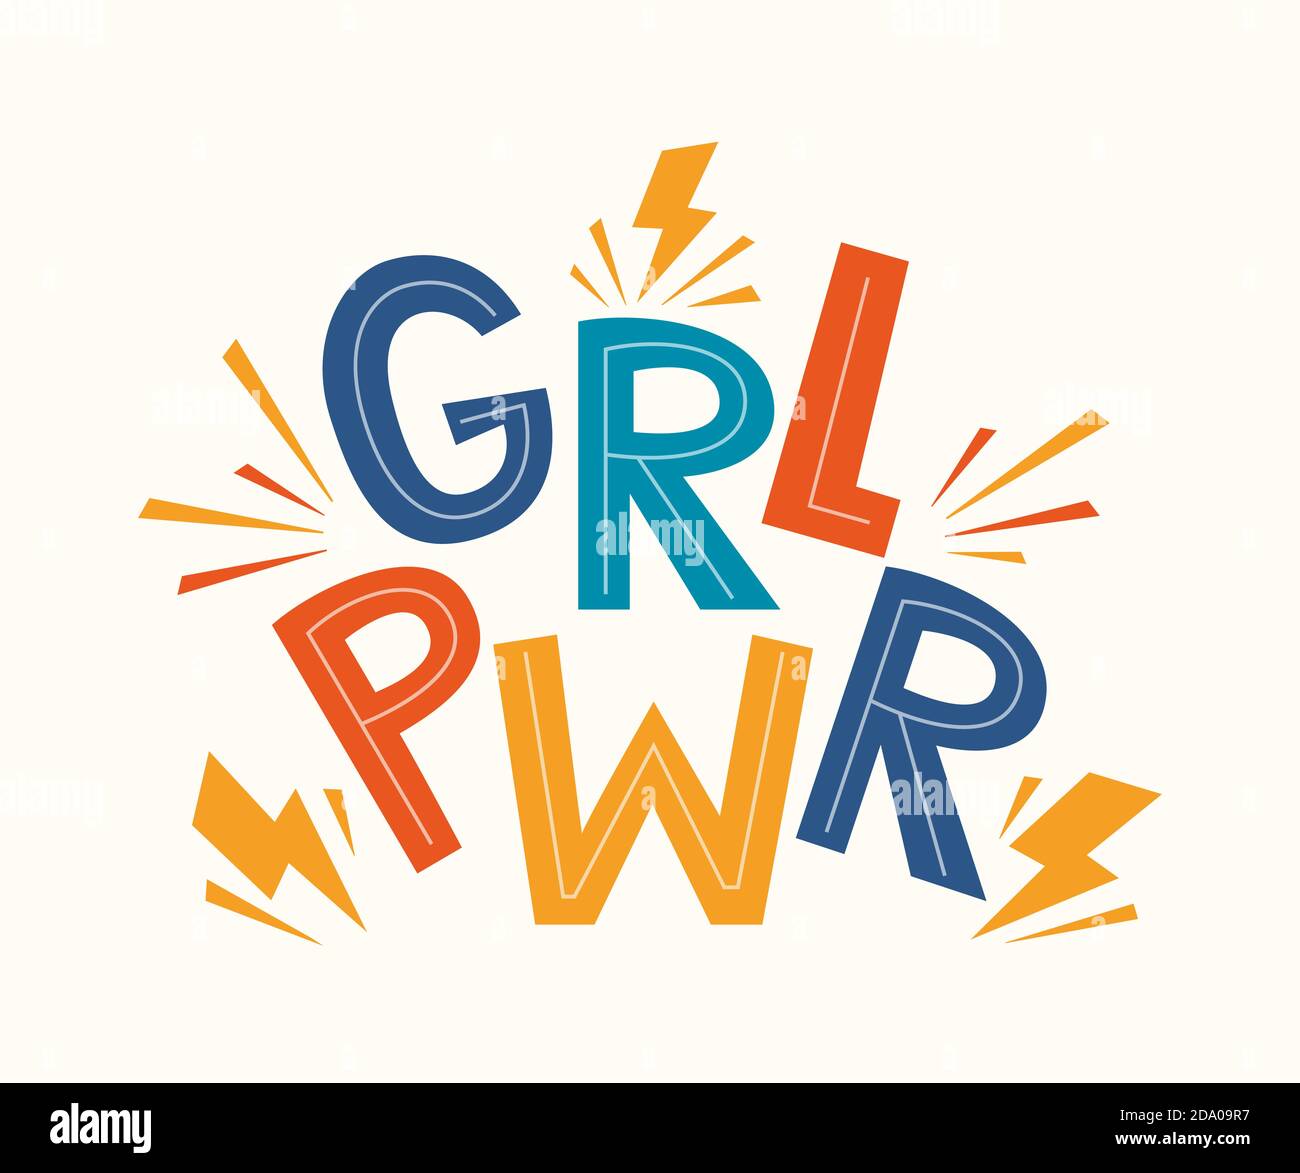 GRL PWR-Angebot. Girl Power cute Hand Zeichnung Motivation Lettering Phrase für T-Shirts, Poster, Kleidung, Stick auf Laptop, Telefon, Wand. Feministischer Slogan Stock Vektor